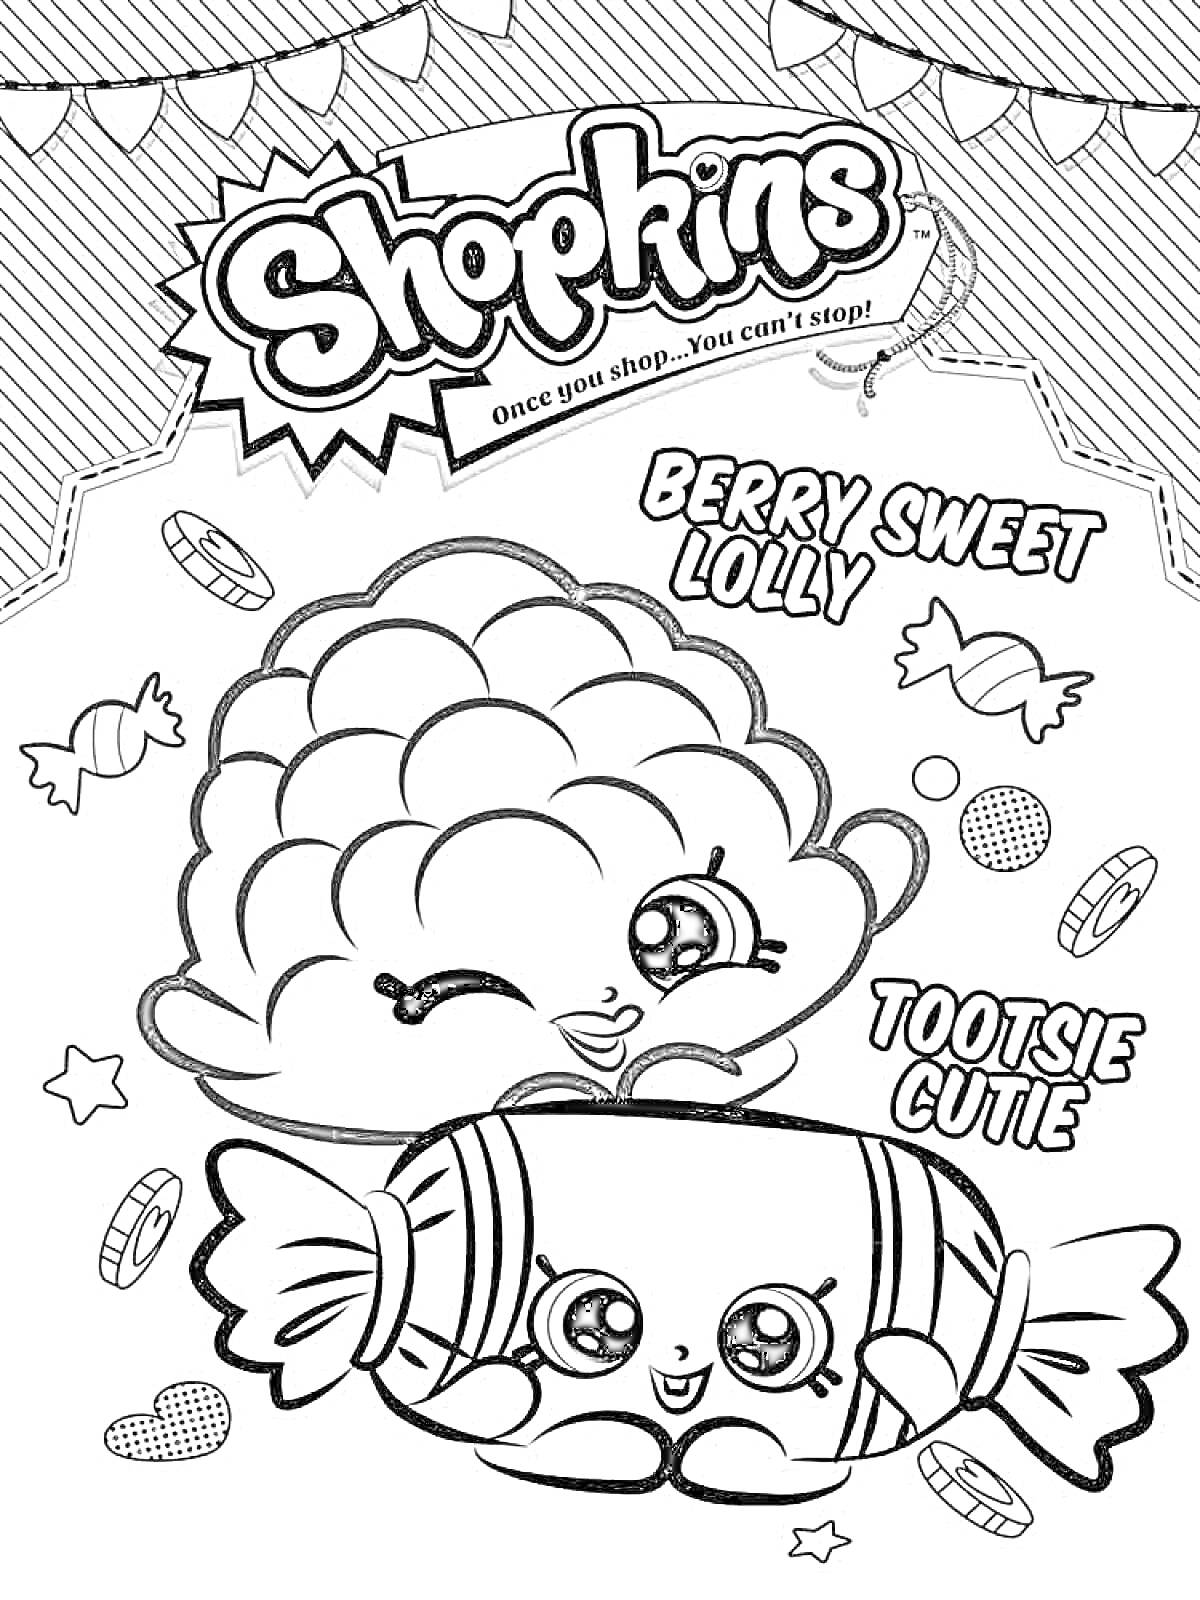 Раскраска Berry Sweet Lolly и Tootsie Cutie с фоном (надпись Shopkins, конфеты, звезды, круглые конфетки, карамельные леденцы, полосатые леденцы, декоративные элементы)